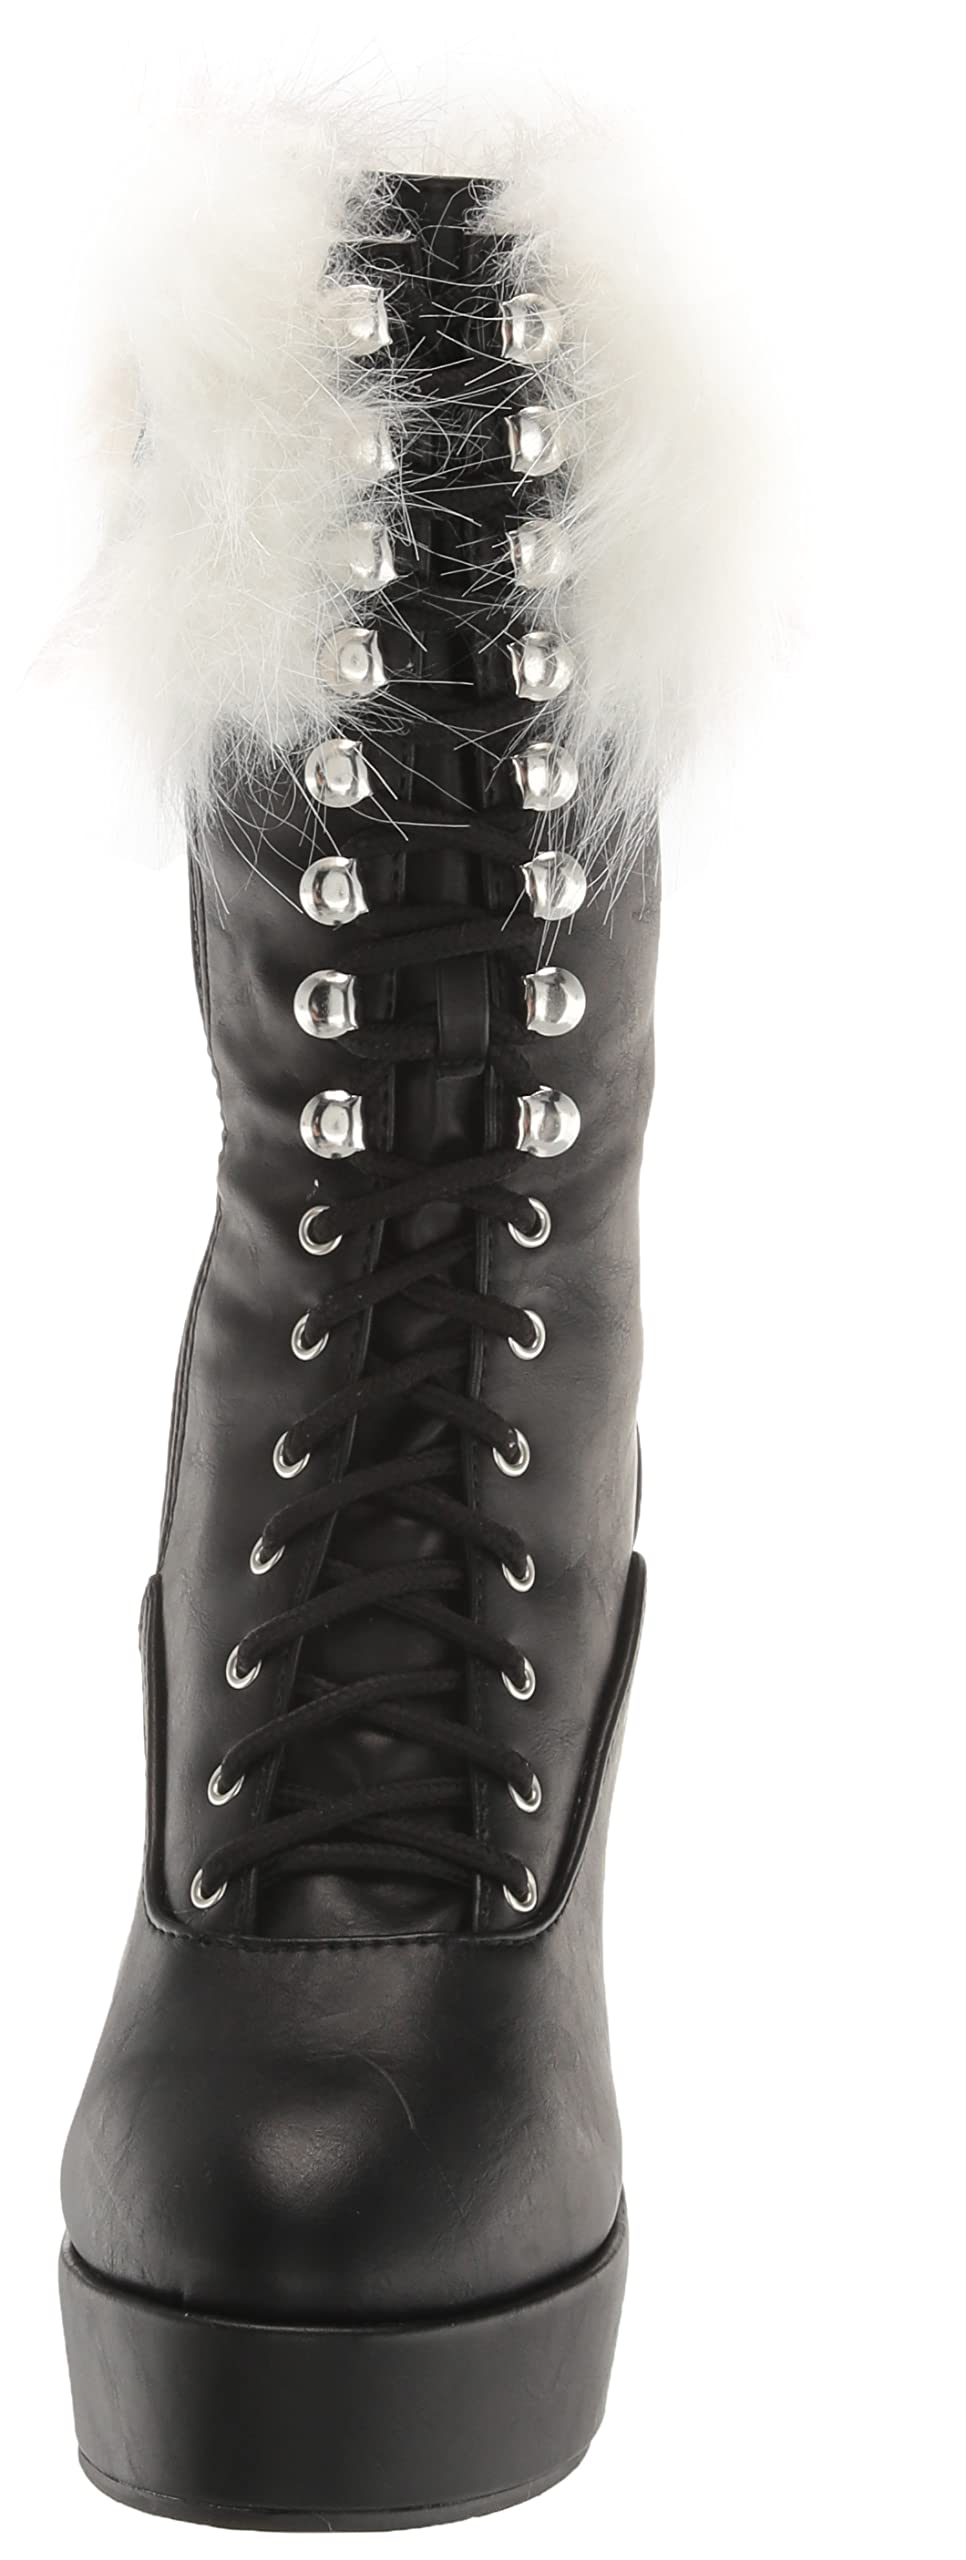 Ellie Shoes Women's 557-joy Fashion Boot